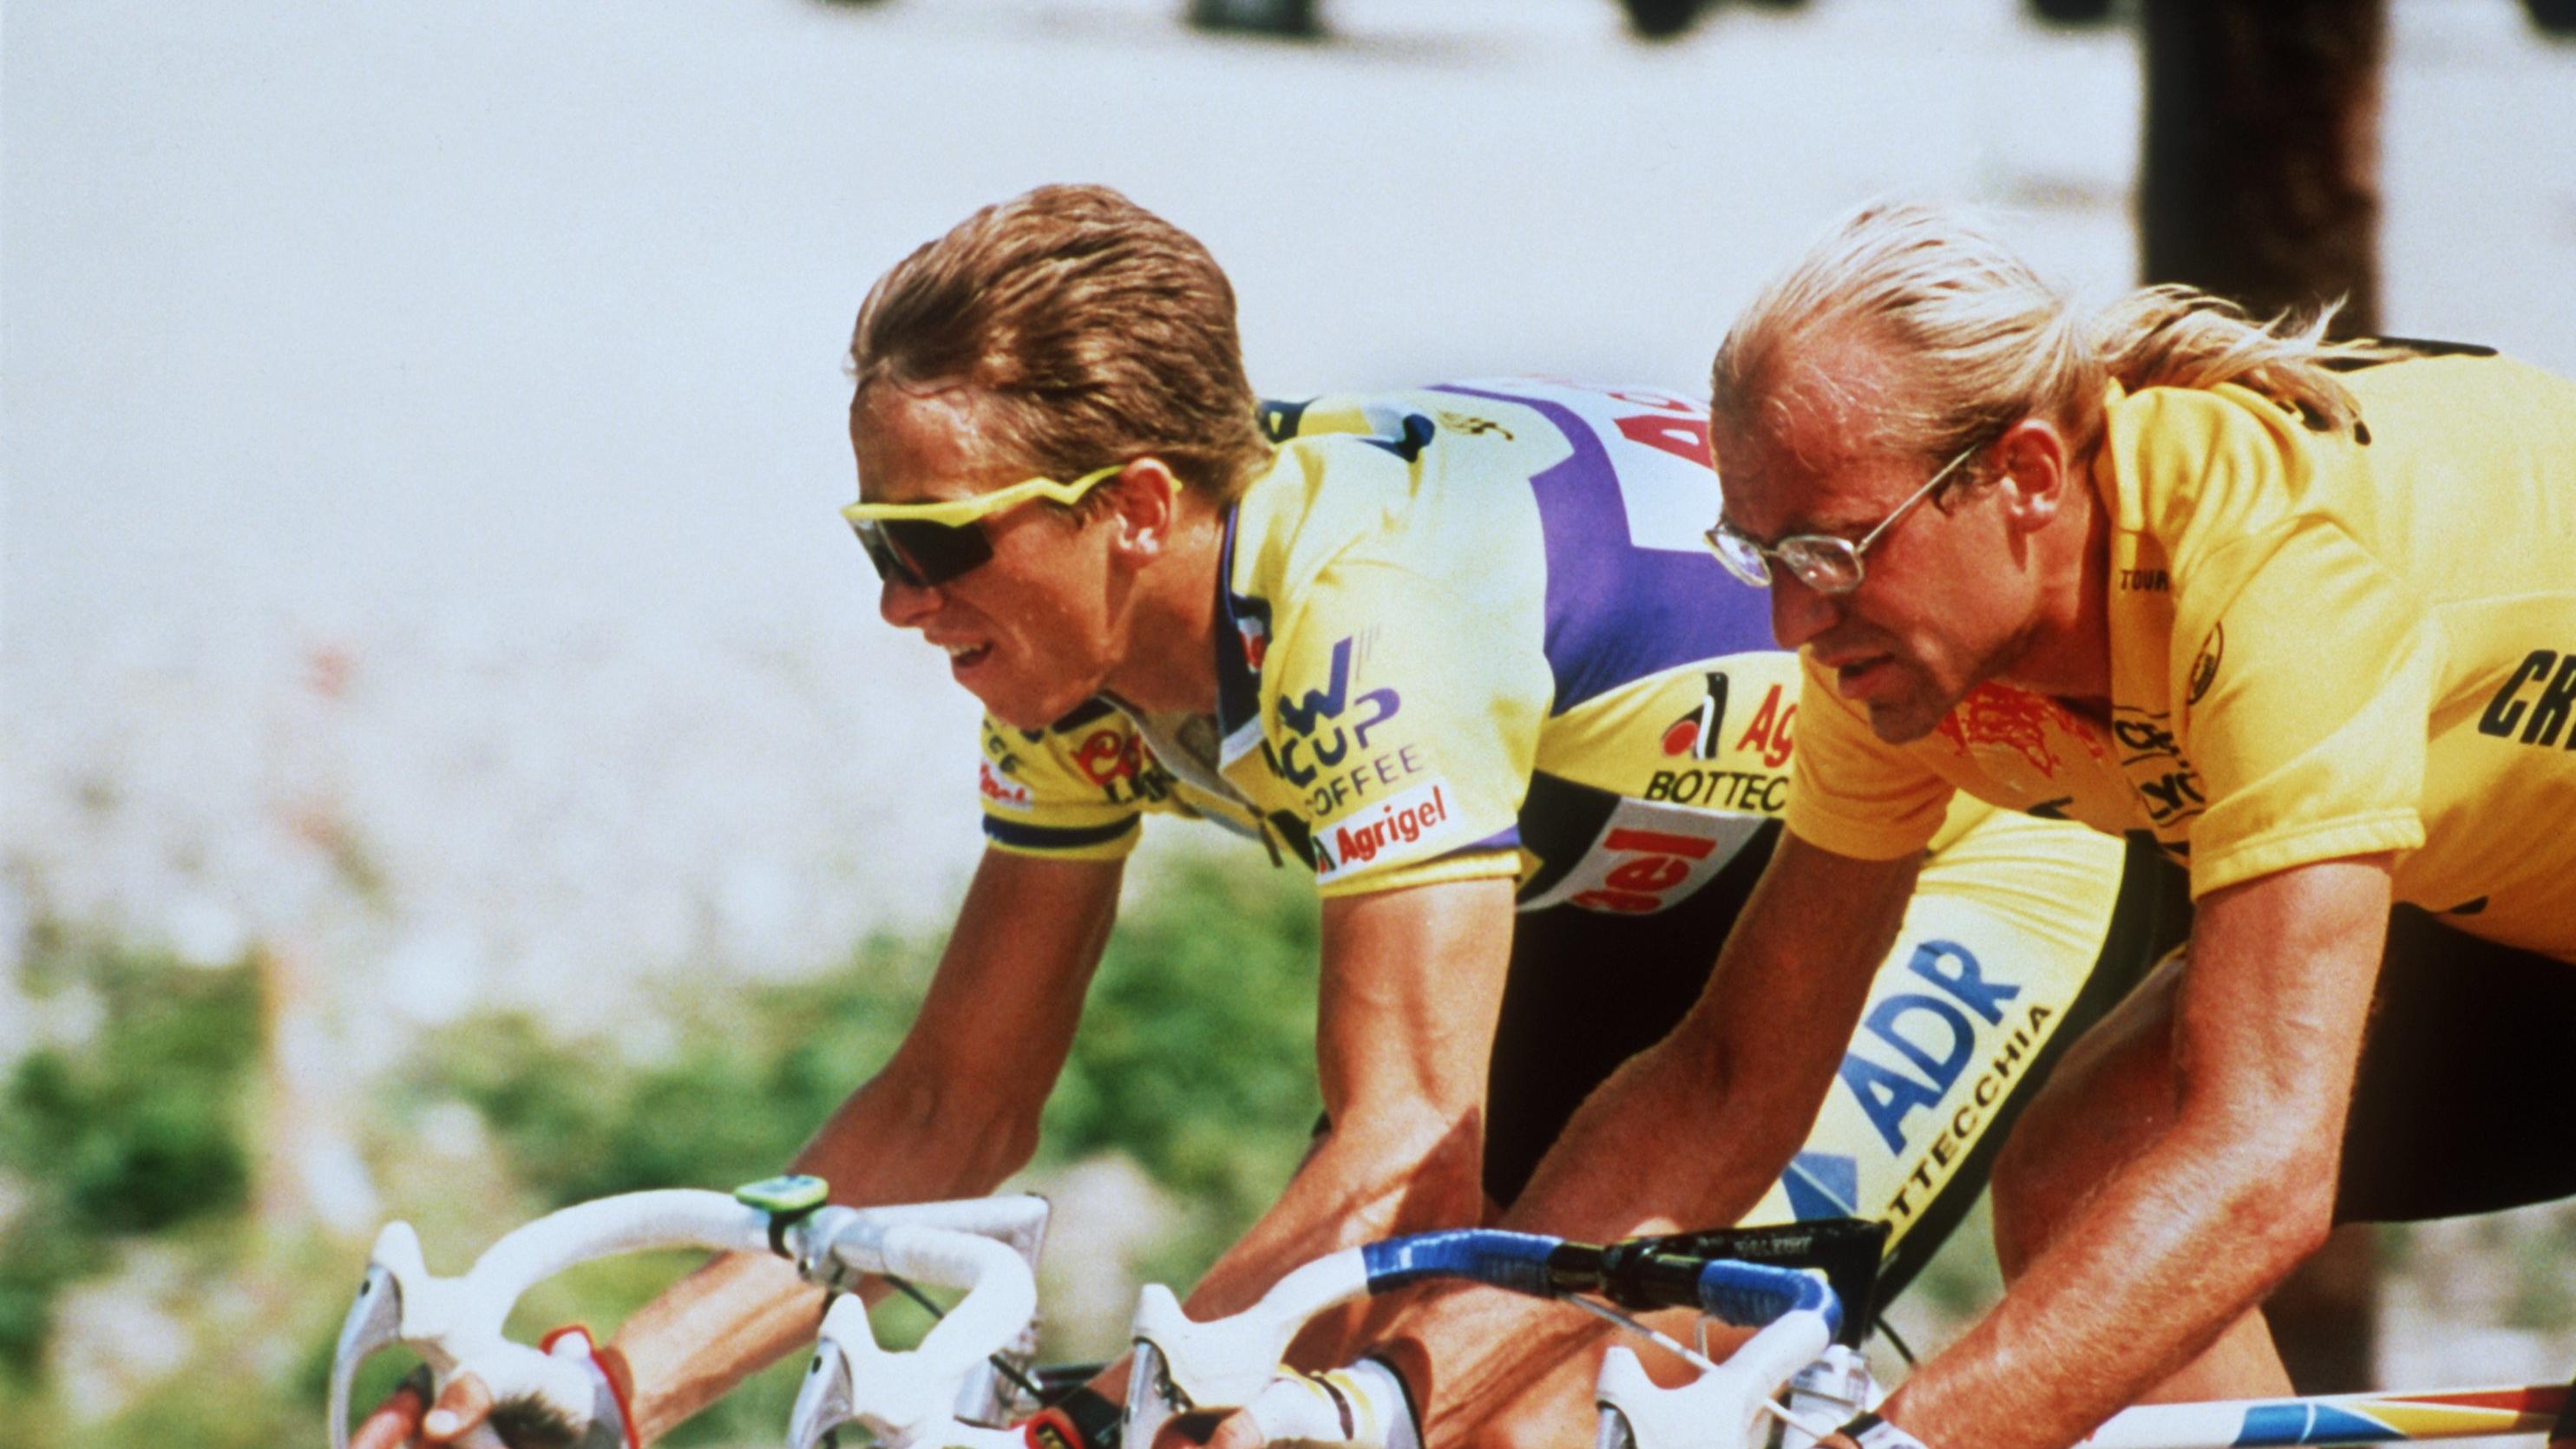 Der US-Radprofi Greg leMond (l) und sein französischer Konkurrent Laurent Fignon fahren Seite an Seite am 21.7.1989 in Aix-les-Bains auf der 19. Etappe der 76. Tour de France. Am 23.7.1989 liefern sich beide auf der 21. und letzten Etappe im Zeitfahr